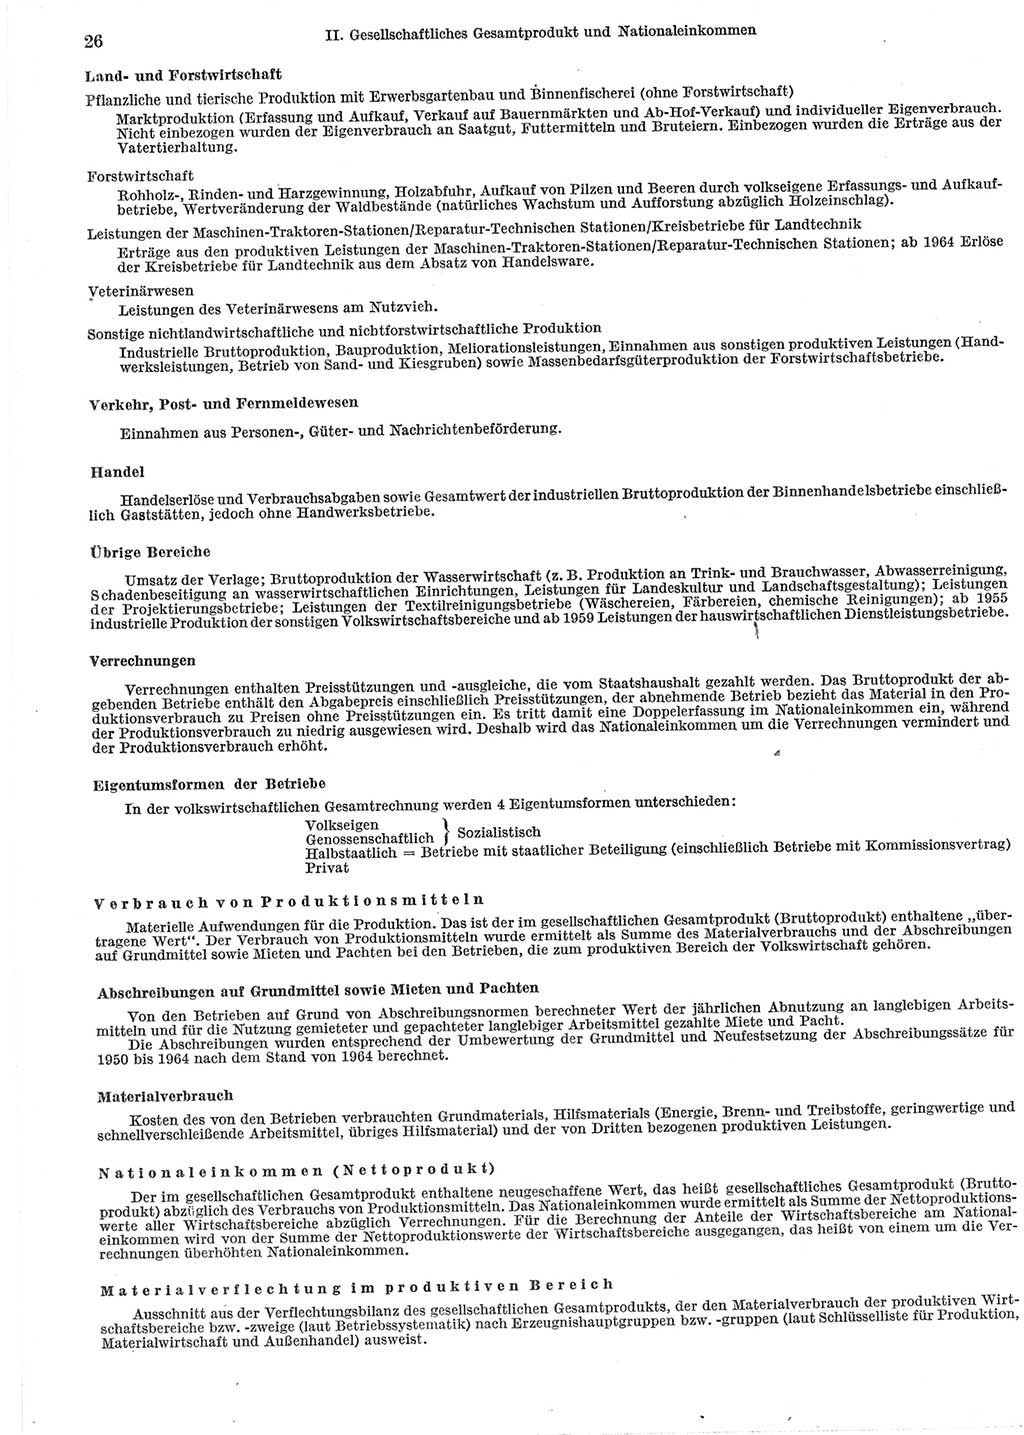 Statistisches Jahrbuch der Deutschen Demokratischen Republik (DDR) 1965, Seite 26 (Stat. Jb. DDR 1965, S. 26)